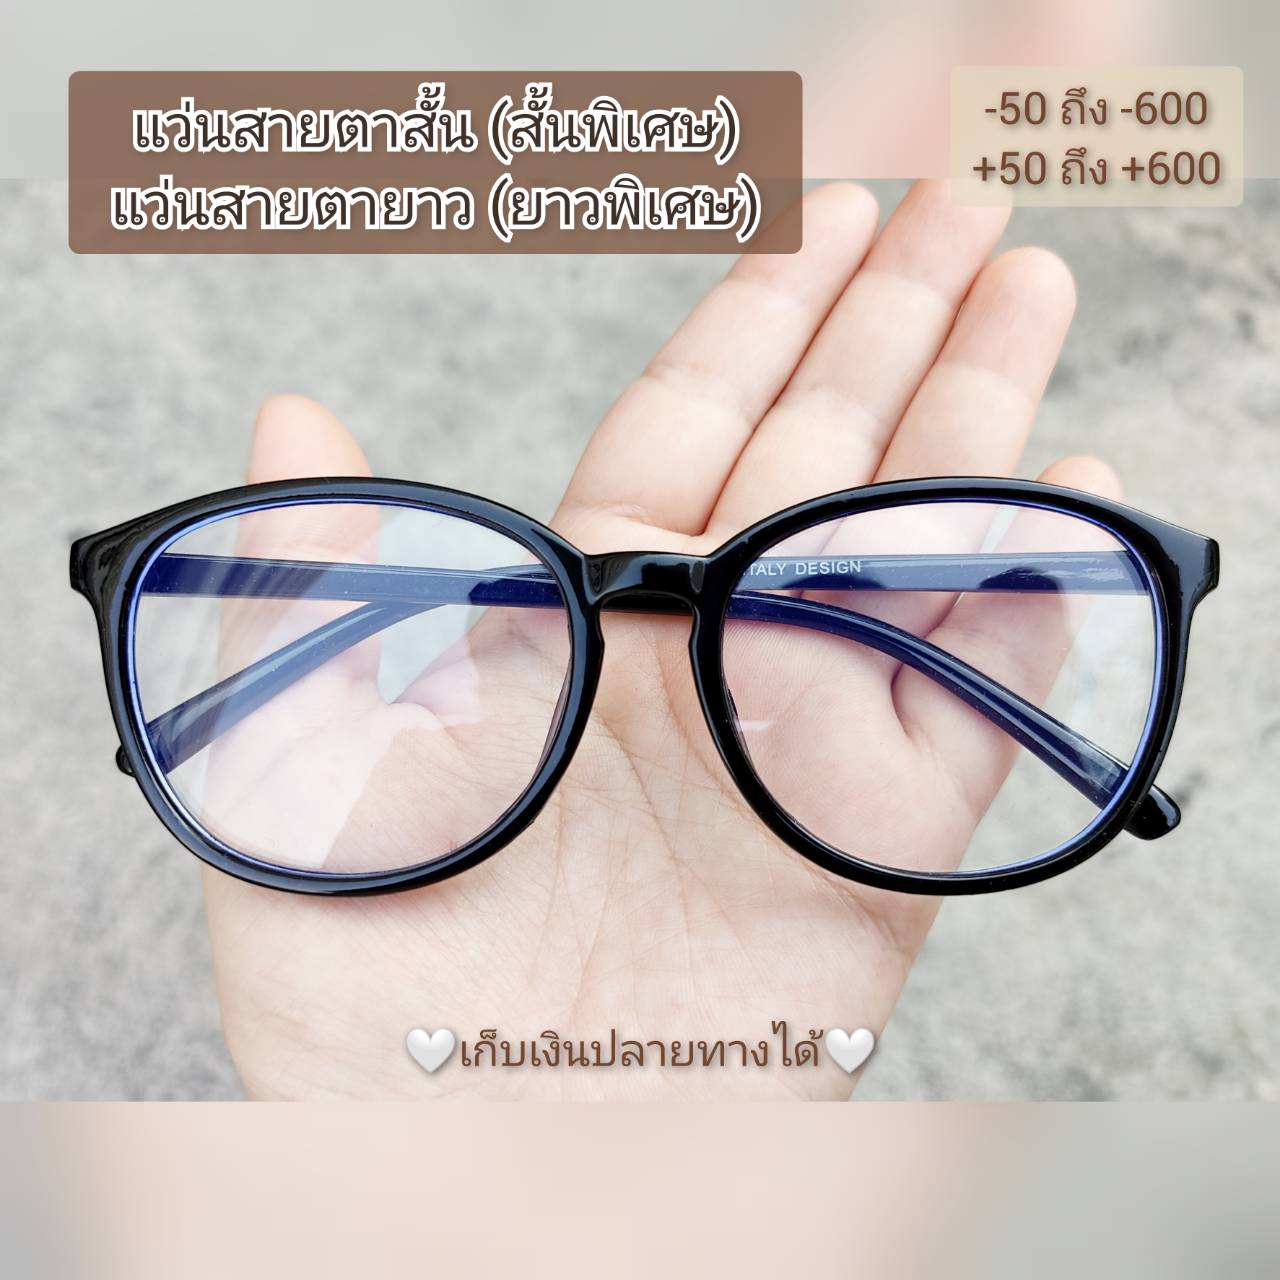 แว่นสายตาสั้นและยาว(7011)